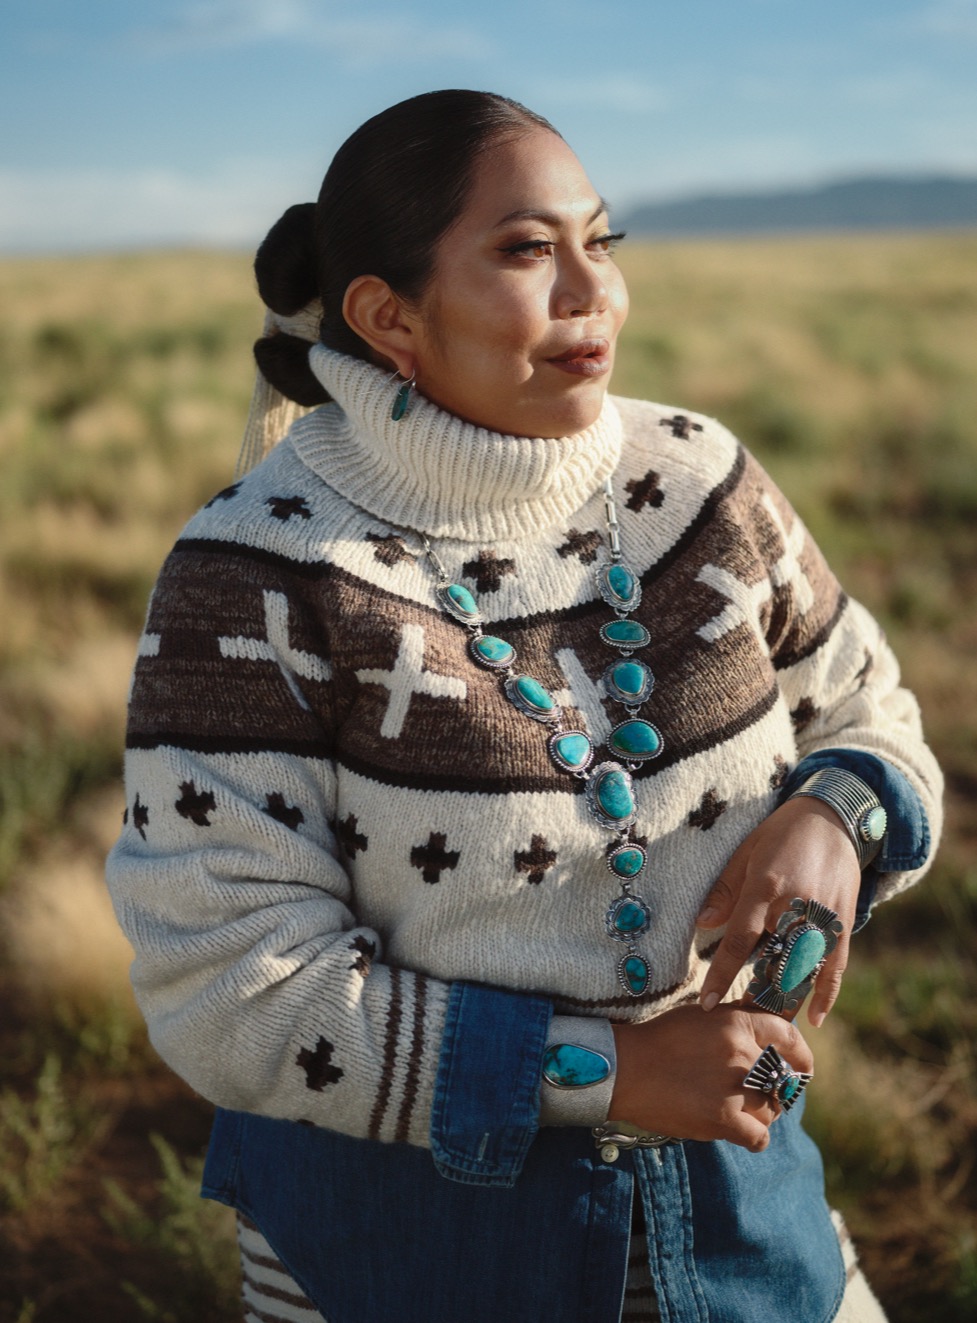  <strong>NAIOMI GLASSES</strong><br/> <span>Textilkünstlerin, Designerin und Model der Diné (Navajo) in der siebten Generation. Nachdem sie in ihrer Kindheit von Phoenix, Arizona, nach Dinétah (Navajo Nation) umzogen war, beschäftigte sich Naiomi unter Anleitung ihrer Großmutter intensiv mit dem traditionellen Weben. Die mittlerweile 26-jährige Naiomi wird regelmäßig auf dem Santa Fe Indian Market und dem Heard Guild Indian Fair & Market der SWAIA (Southwestern Association for Indian Arts) vorgestellt, wo ihre Werke eine Reihe von Auszeichnungen und Anerkennungen erhalten haben, unter anderem mehrere Preise in verschiedenen Textil- und Webkategorien</span>  